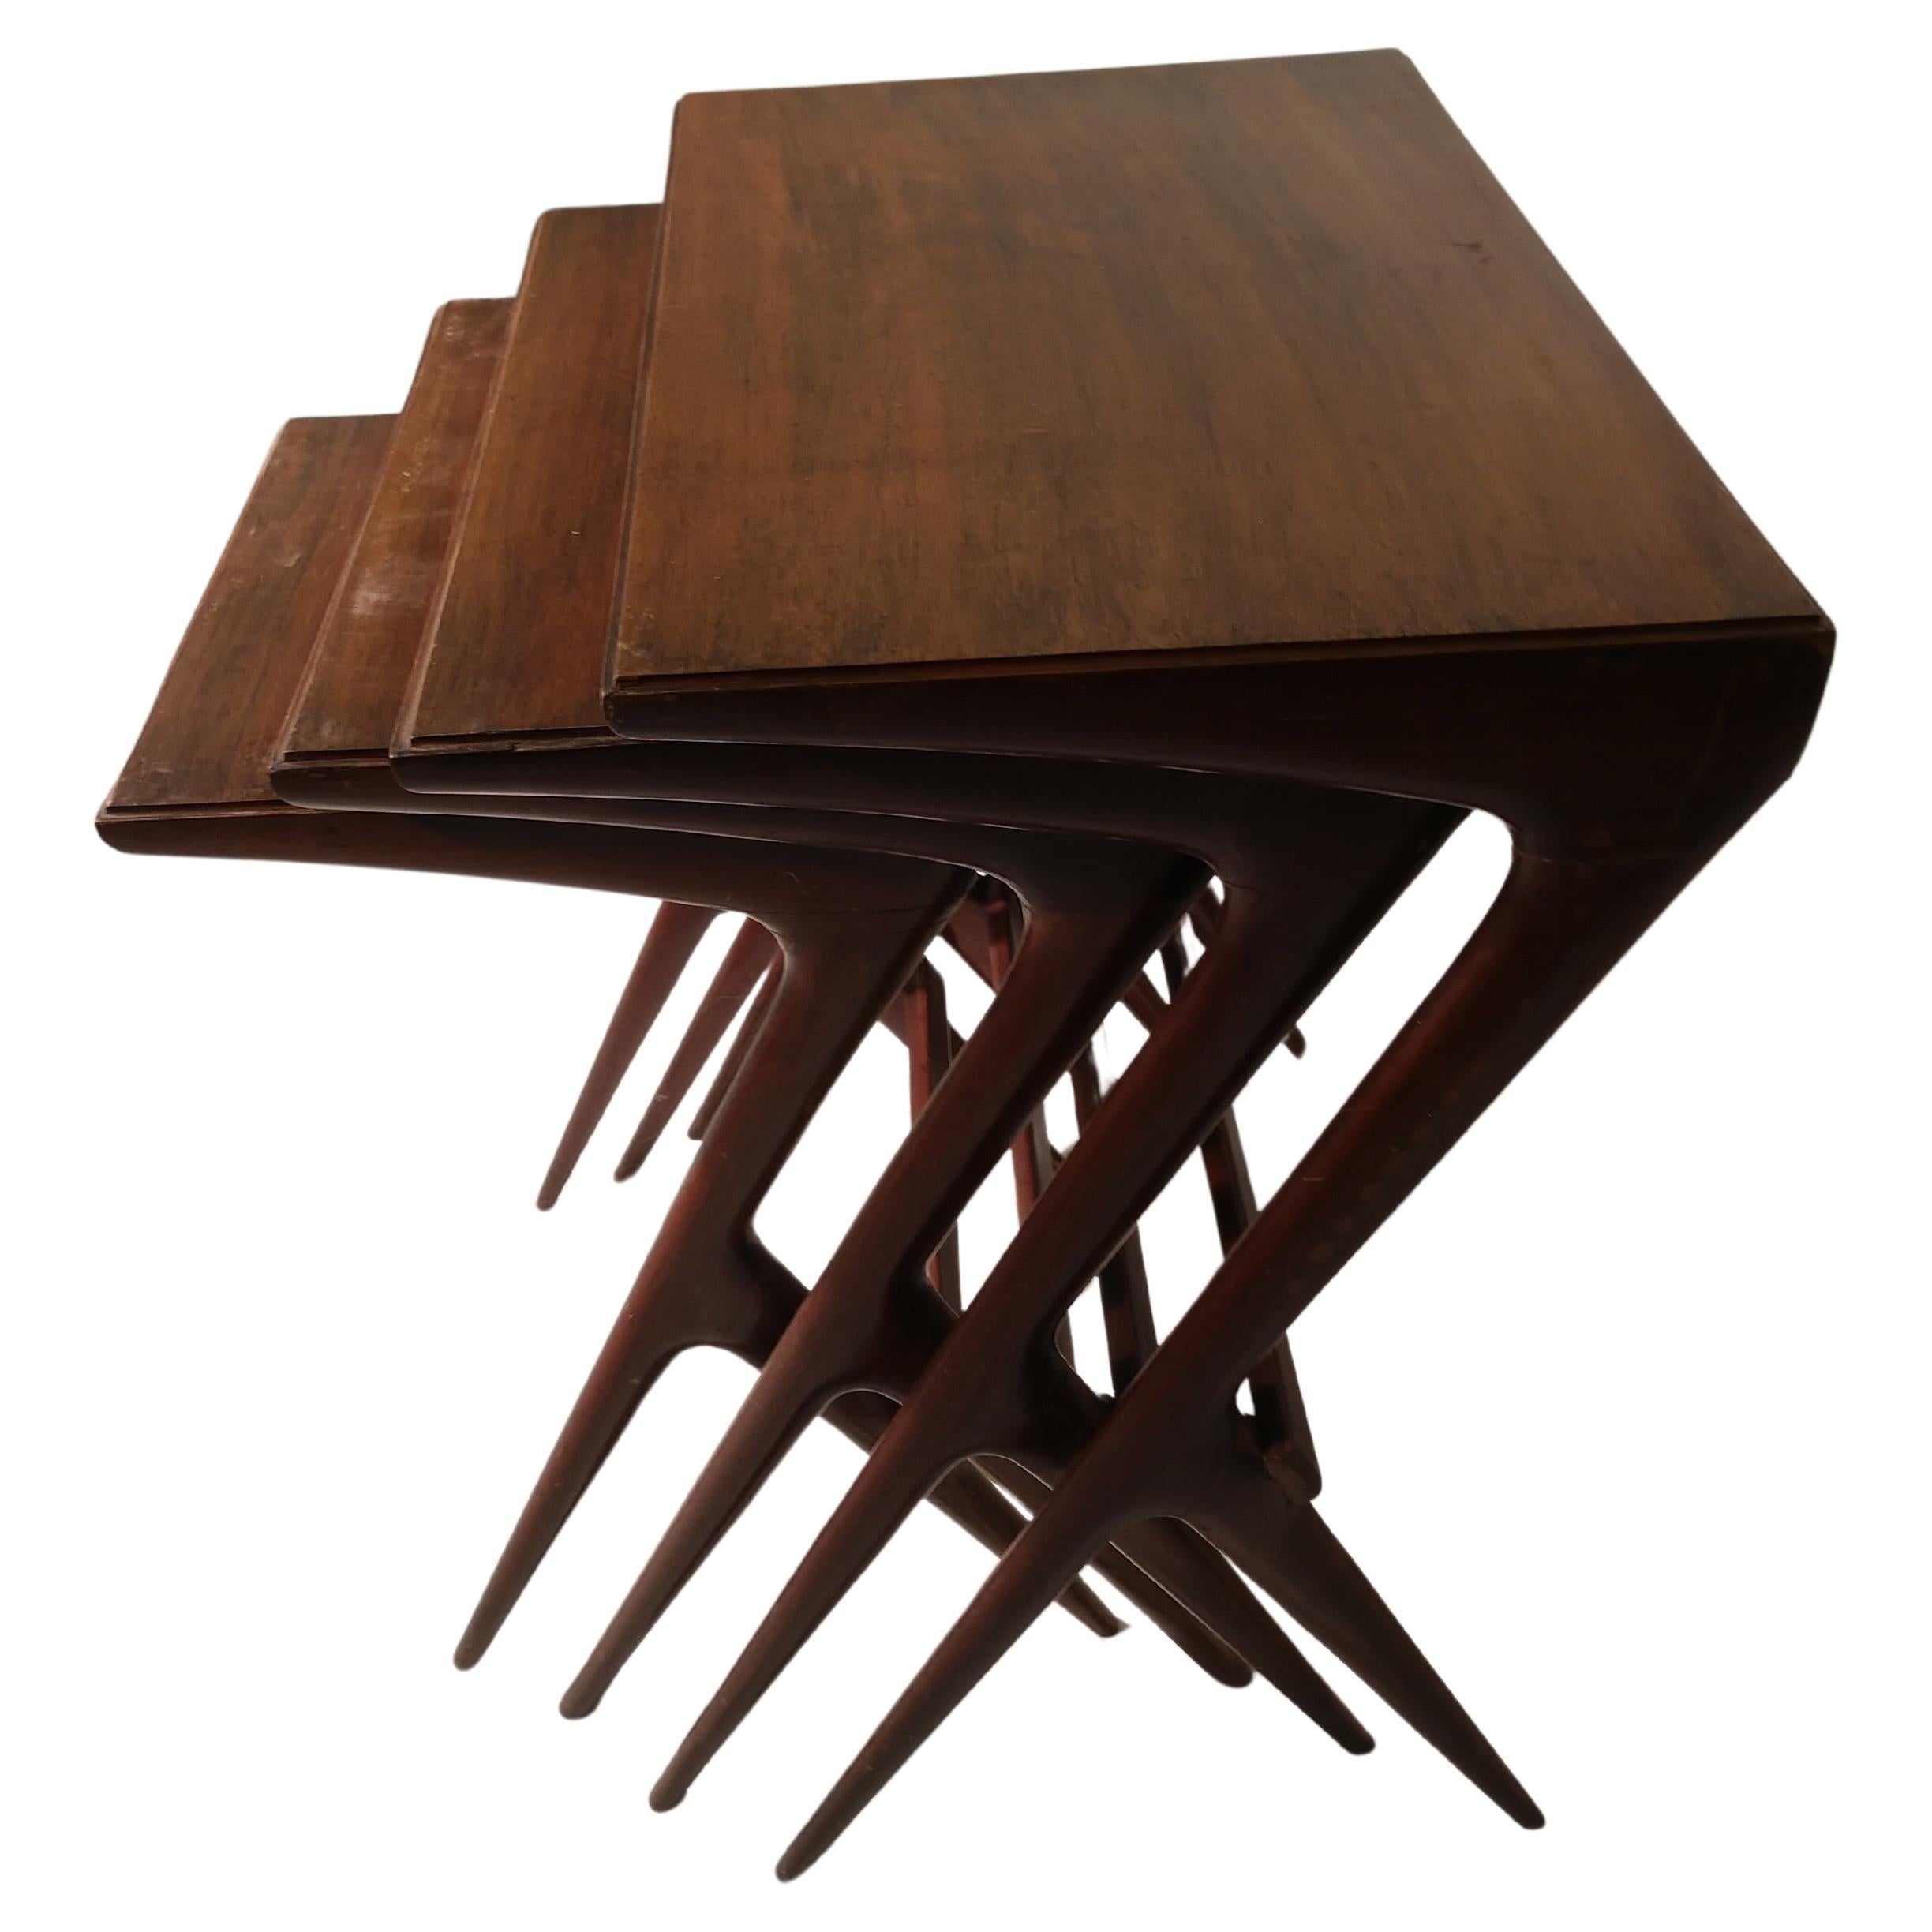 Elegantes und skulpturales Set von 4 Nischentischen aus Nussbaumholz aus den 1950er Jahren von Ico Parisi. Die Tische sind sehr fest und stabil. Originale Ausführung. Der Preis gilt für das Set, das aus folgenden Teilen besteht:
Maßnahmen: #1. 23,5